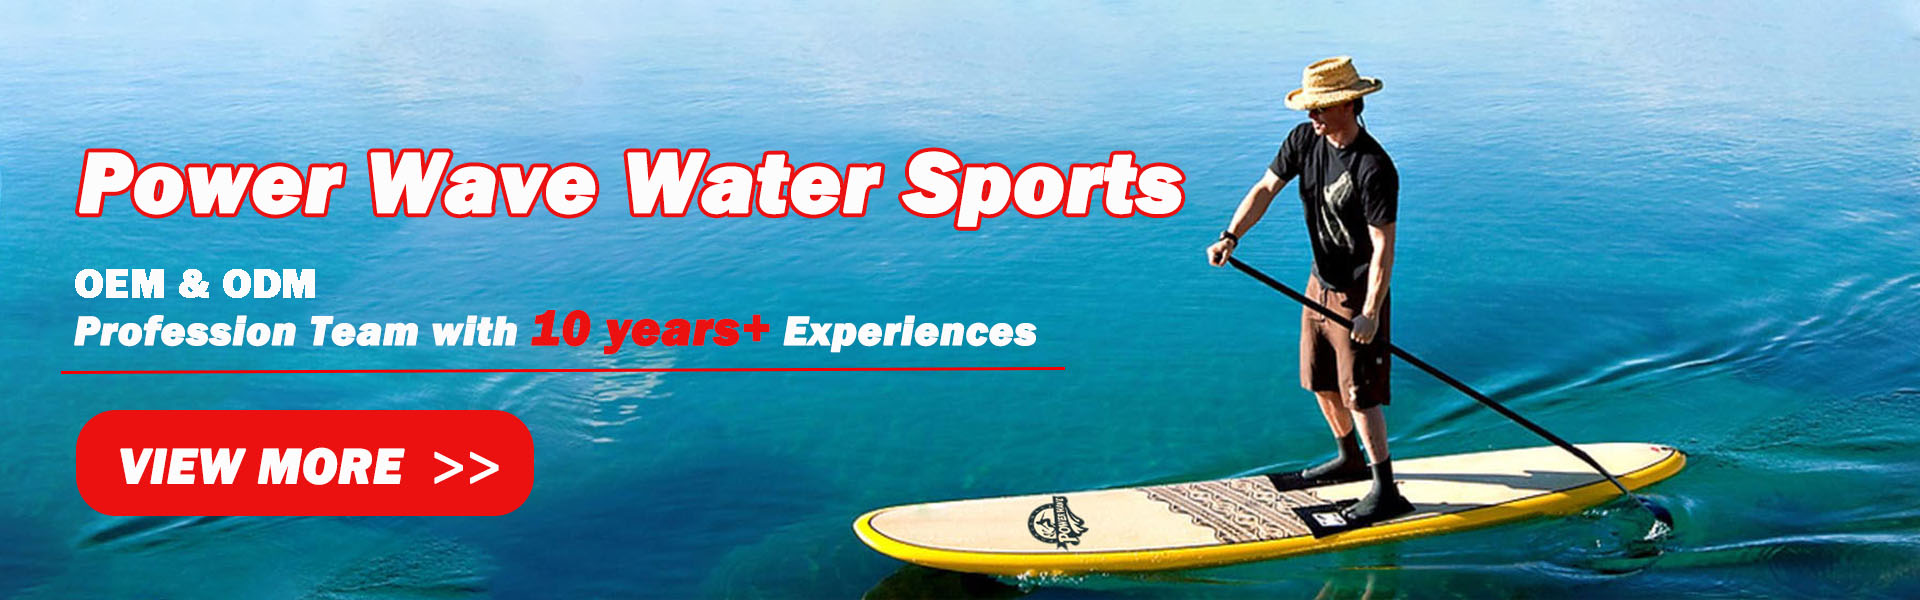 서핑 보드, 소프트 보드, Sup,Power Wave Water Sports co.Ltd